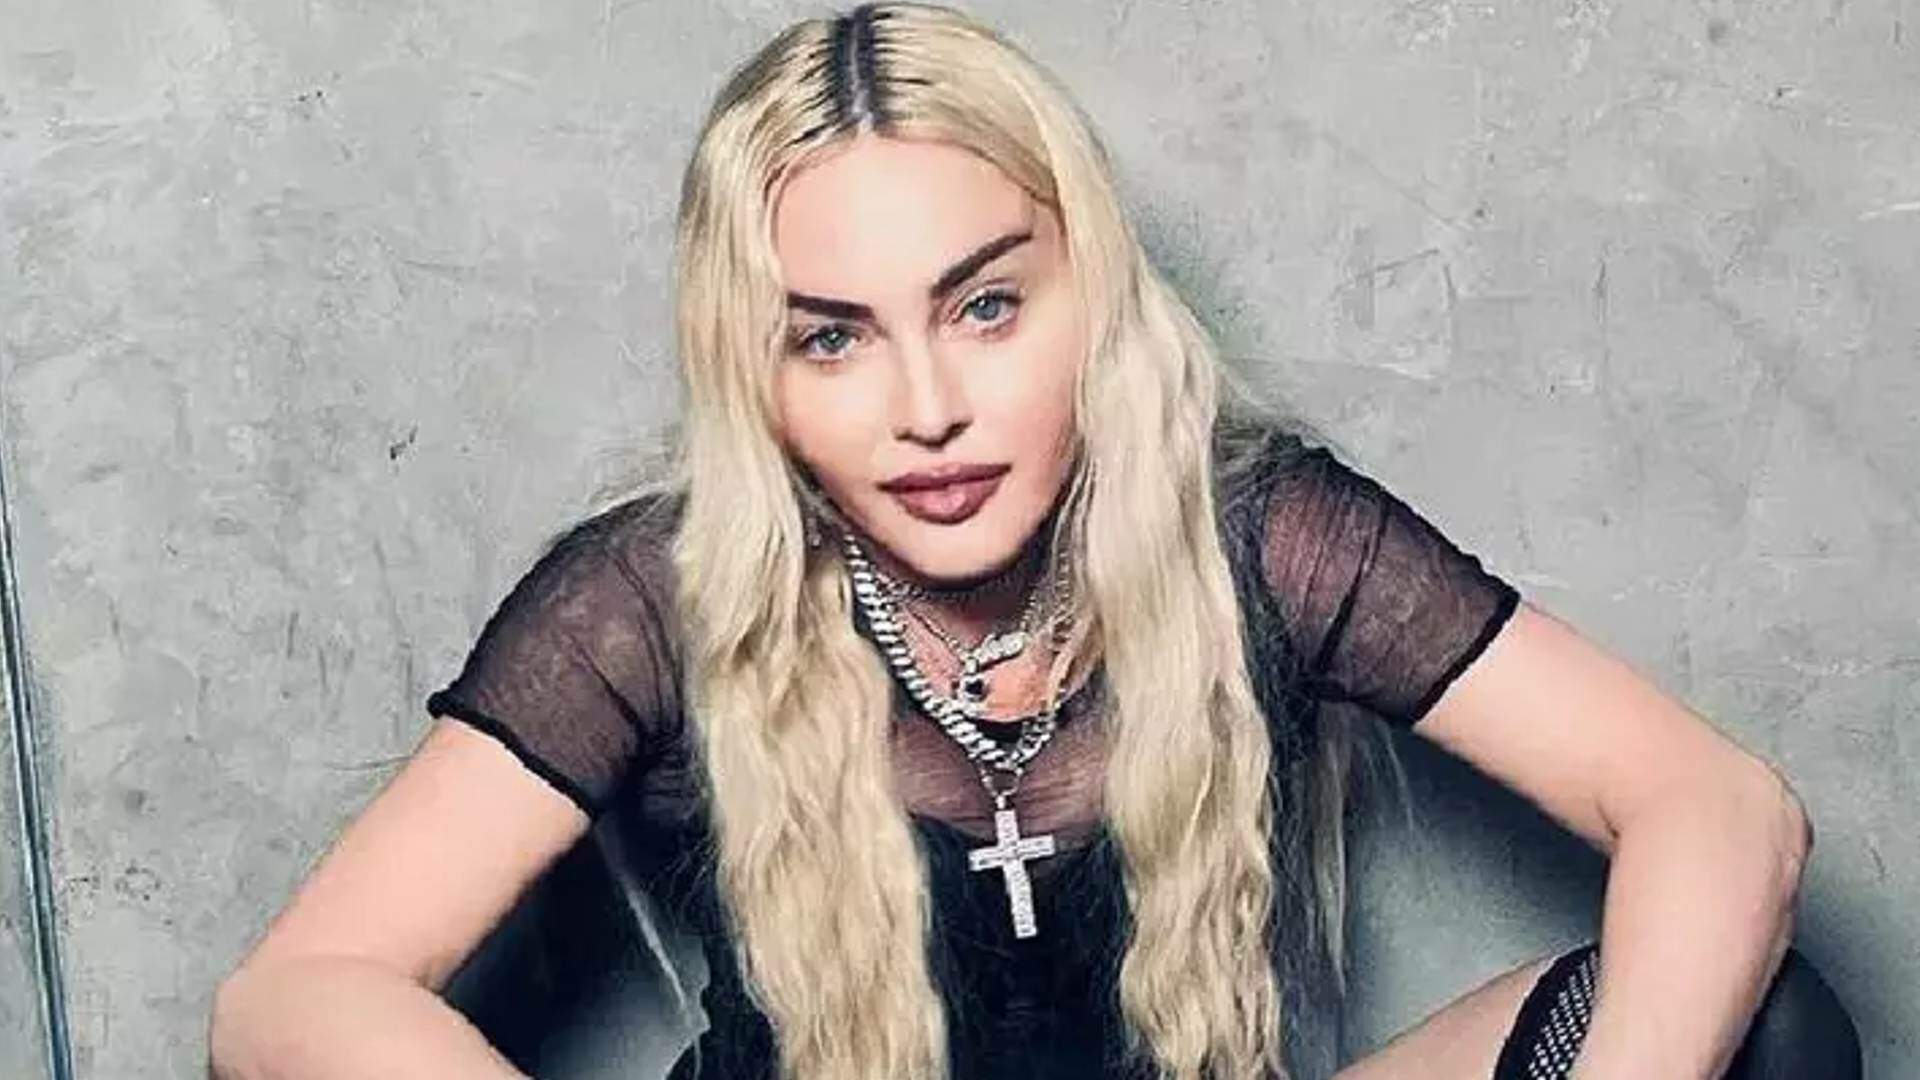 Está tudo bem? Madonna posta primeiras selfies e tenta tranquilizar fãs após grave problema de saúde - Metropolitana FM